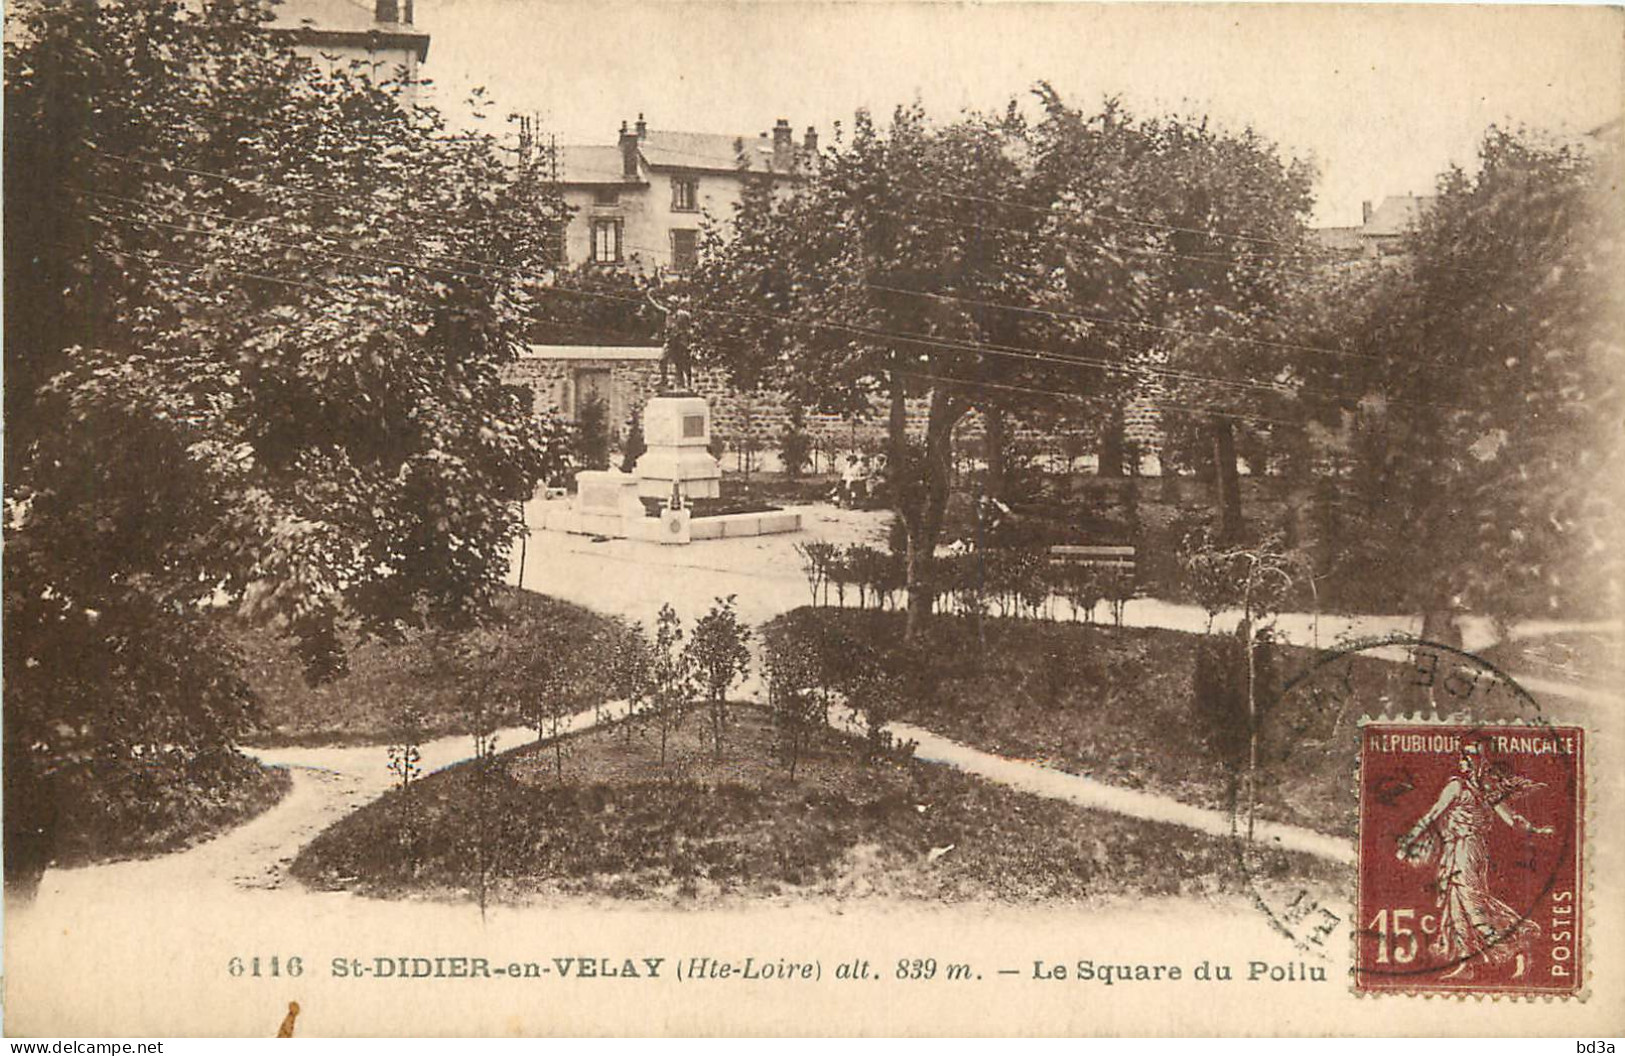  43 - SAINT DIDIER EN VELAY - LE SQUARE DU POILU - Saint Didier En Velay